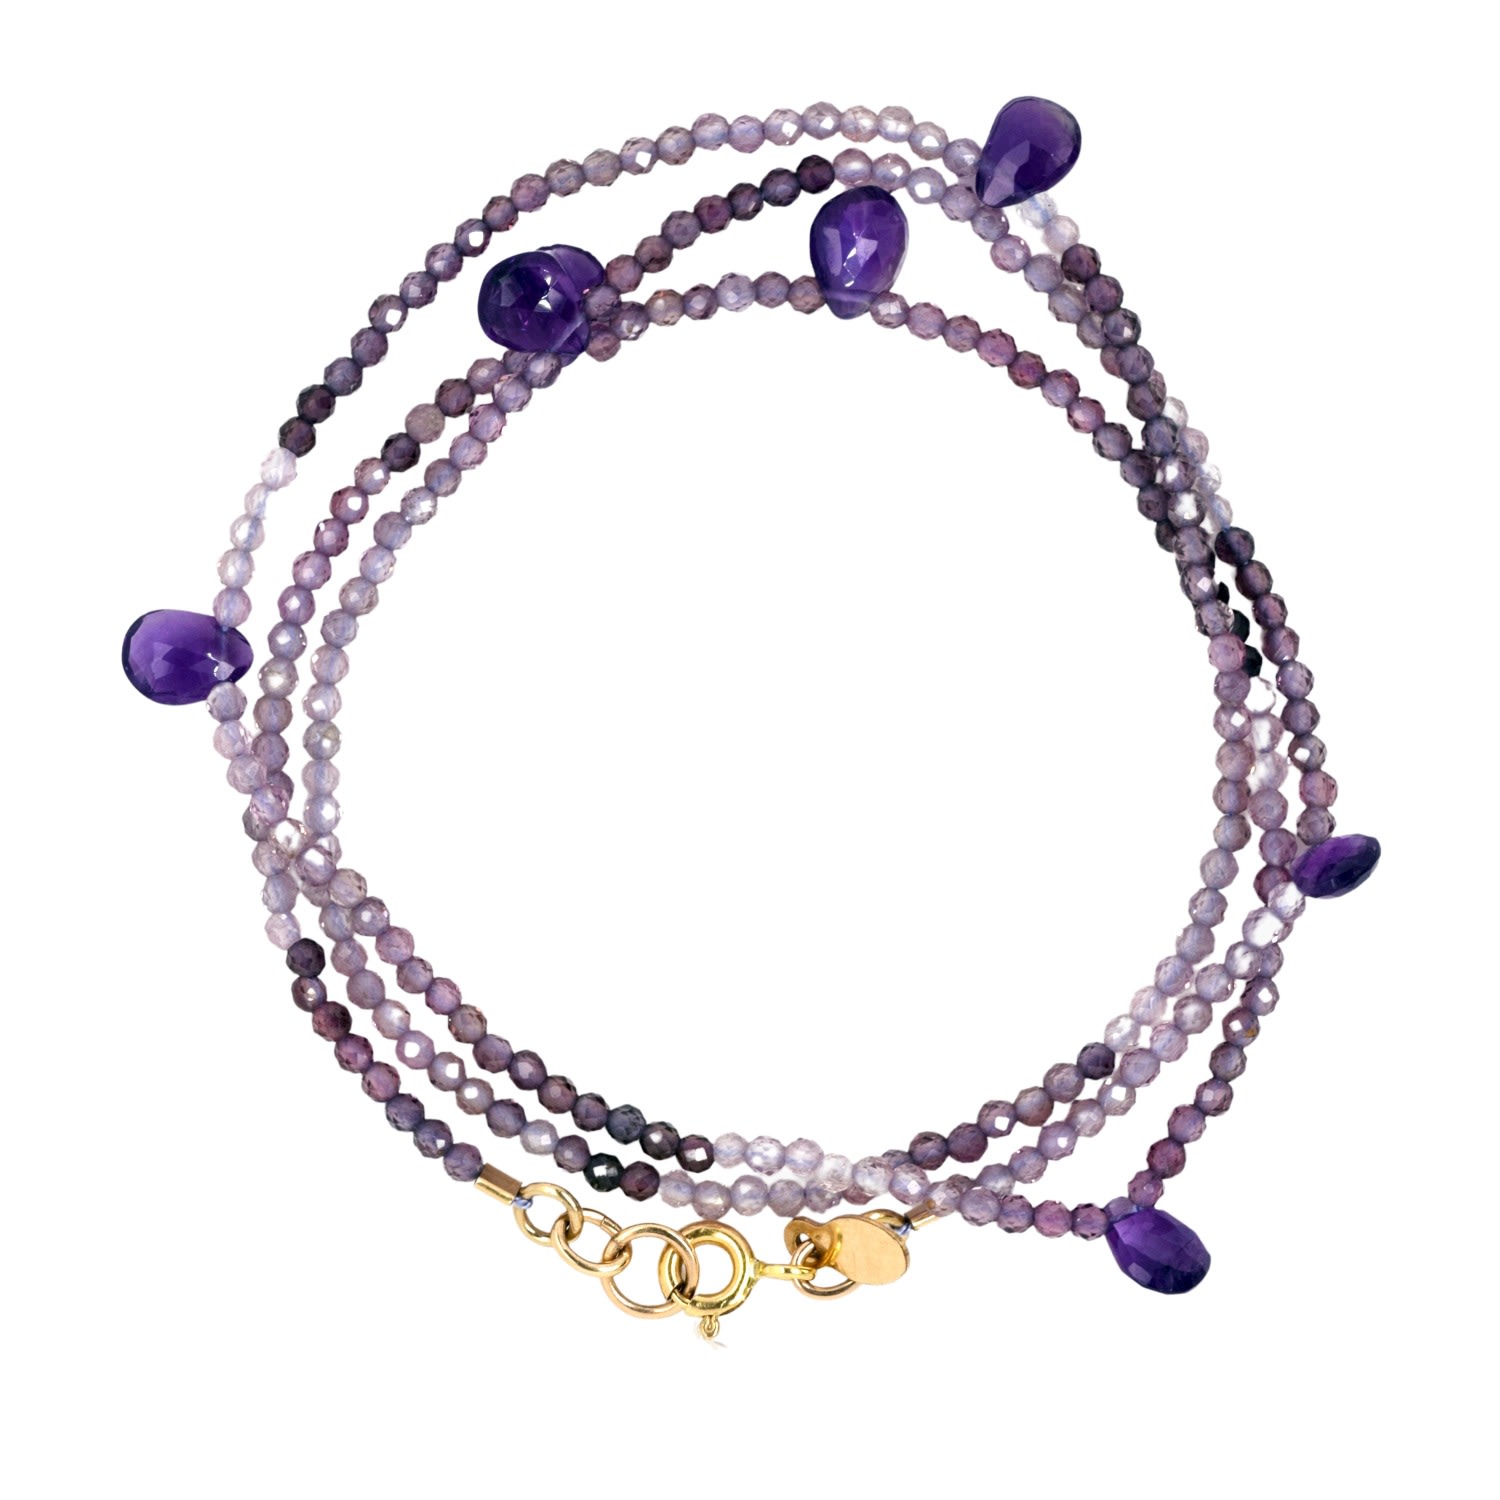 Women’s Pink / Purple Triple Wrap Purple Shaded Spinel Amethyst Bracelet Or Necklace Lori Kaplan Jewelry Design